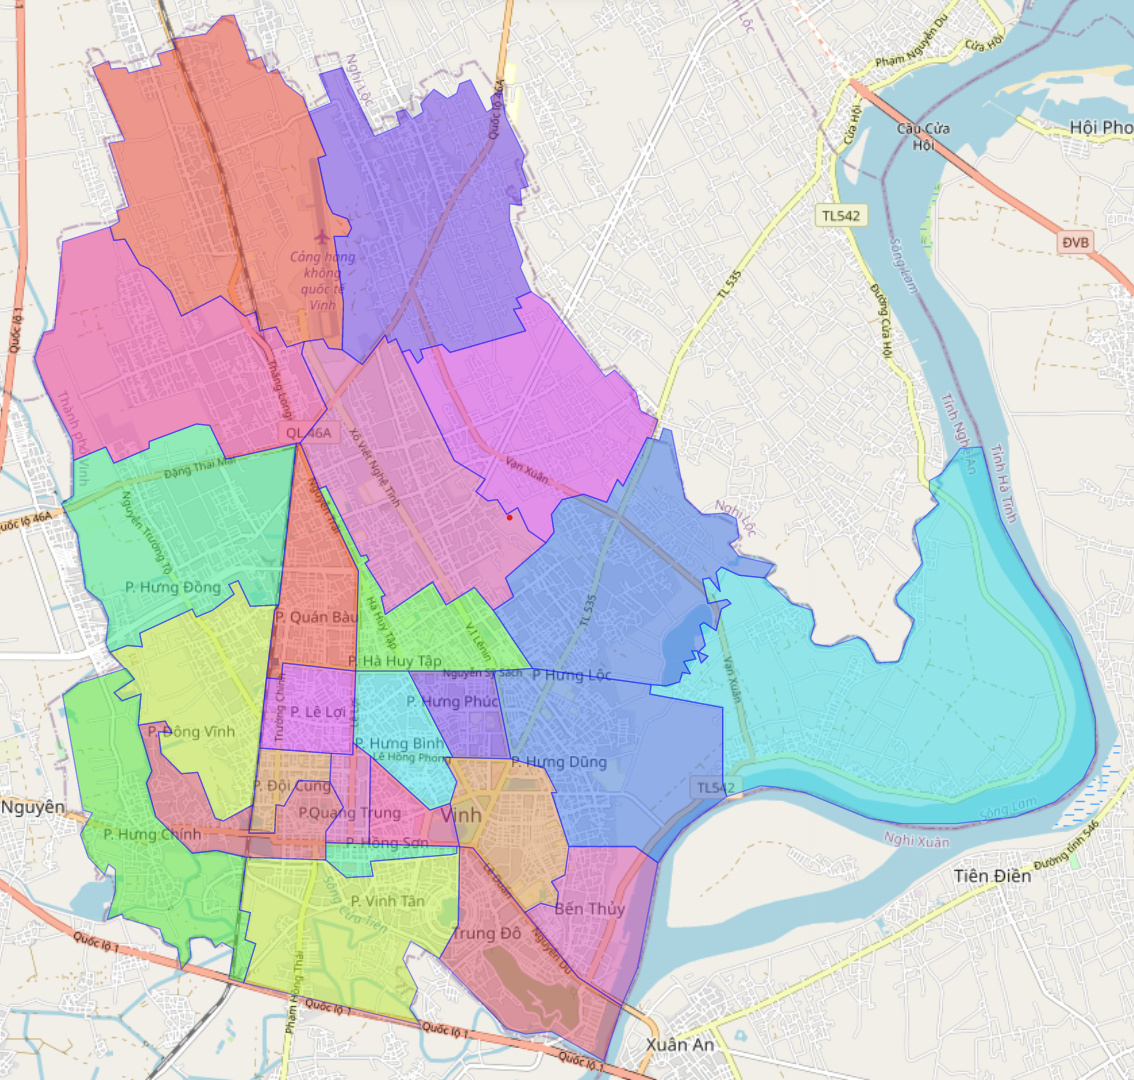 Bản đồ Thành phố Vinh: Bản đồ Thành phố Vinh cập nhật mới nhất cho bạn những thông tin mới nhất về các địa điểm nổi bật và địa chỉ của các dịch vụ cần thiết. Sử dụng bản đồ này, bạn sẽ có một chuyến đi thú vị và thuận tiện hơn.